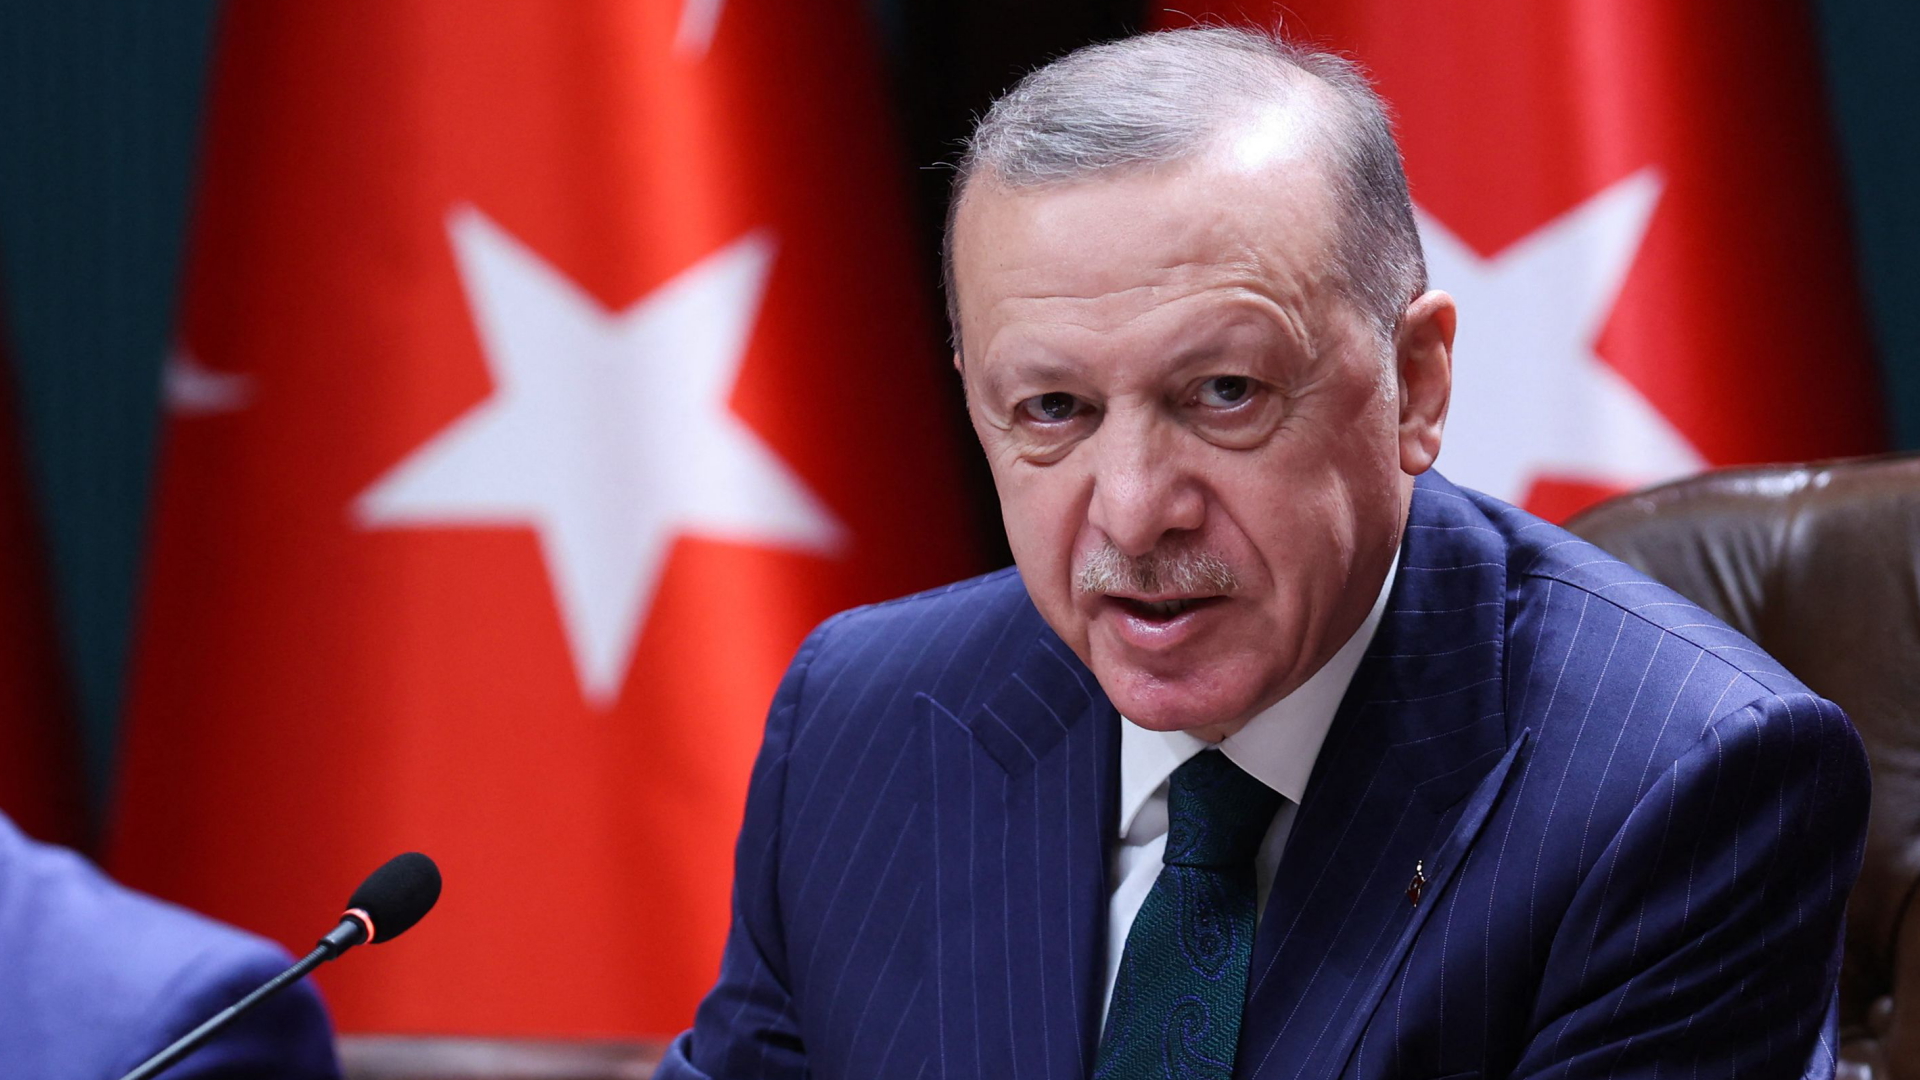 Der türkische Präsident Erdogan spricht bei einer Pressekonferenz